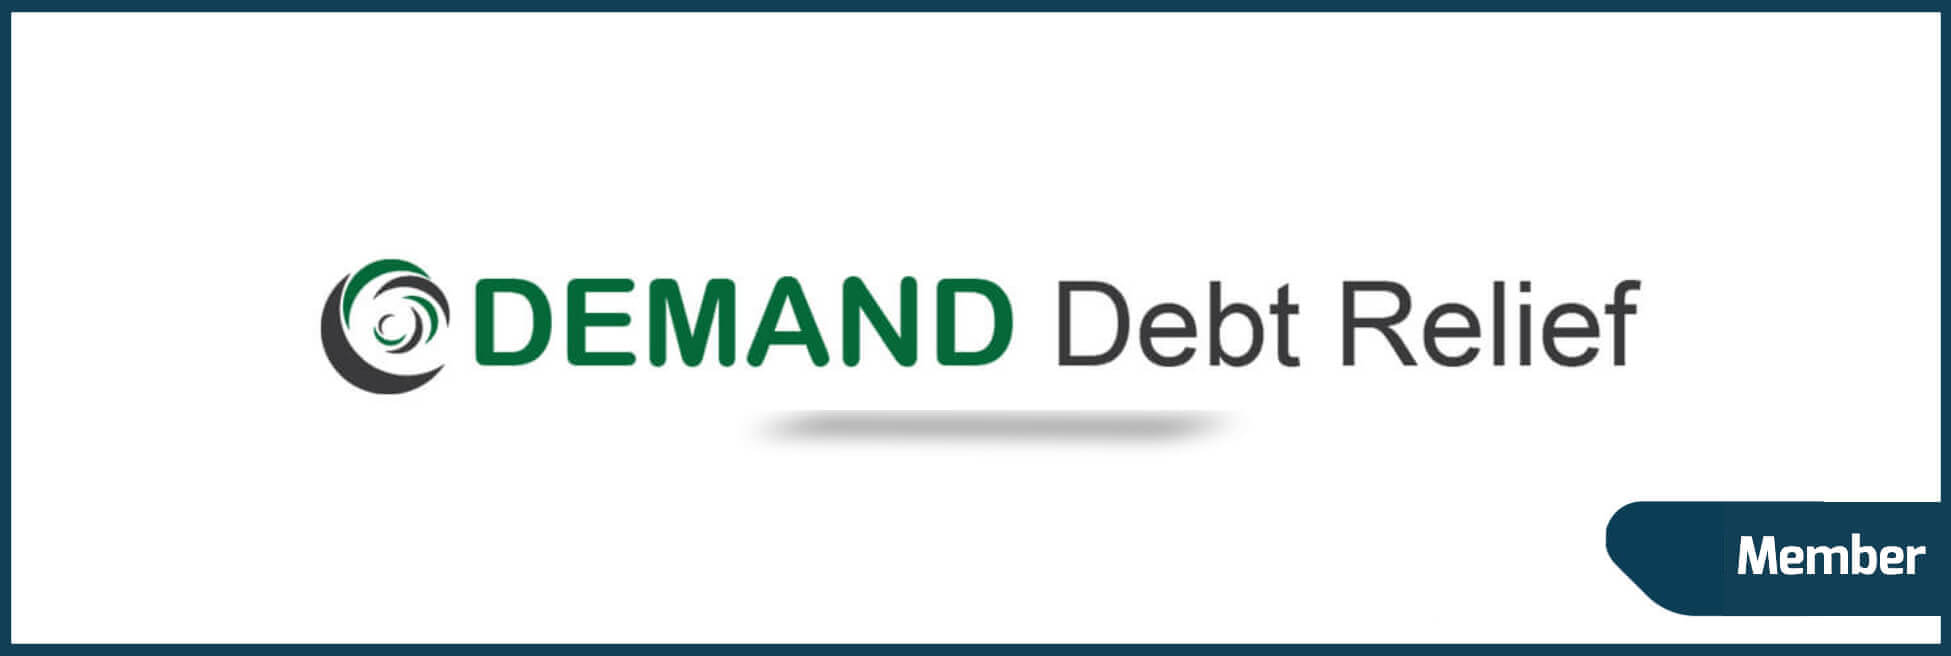 Demand Debt Relief, LLC